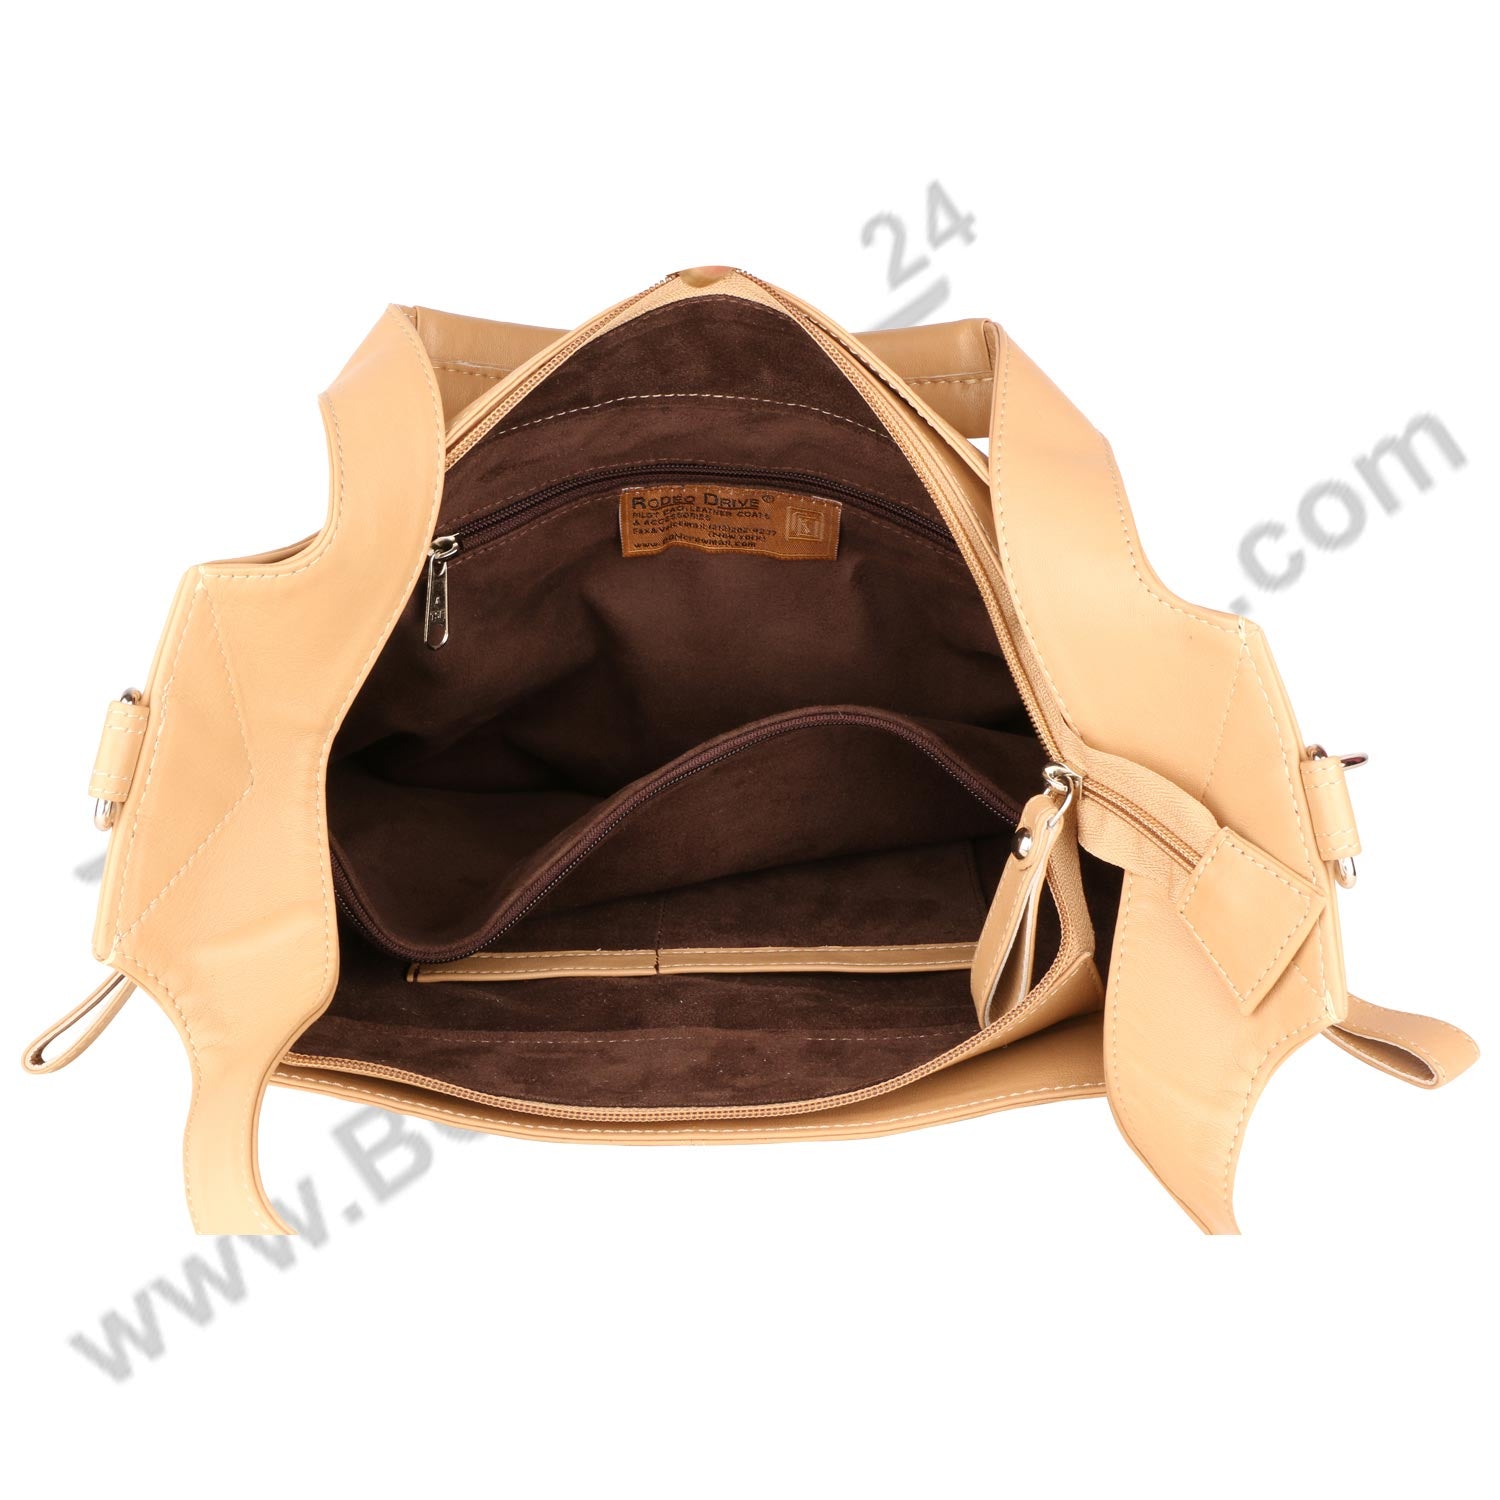 Inside open image of Cream FER GAMO HAND BAG